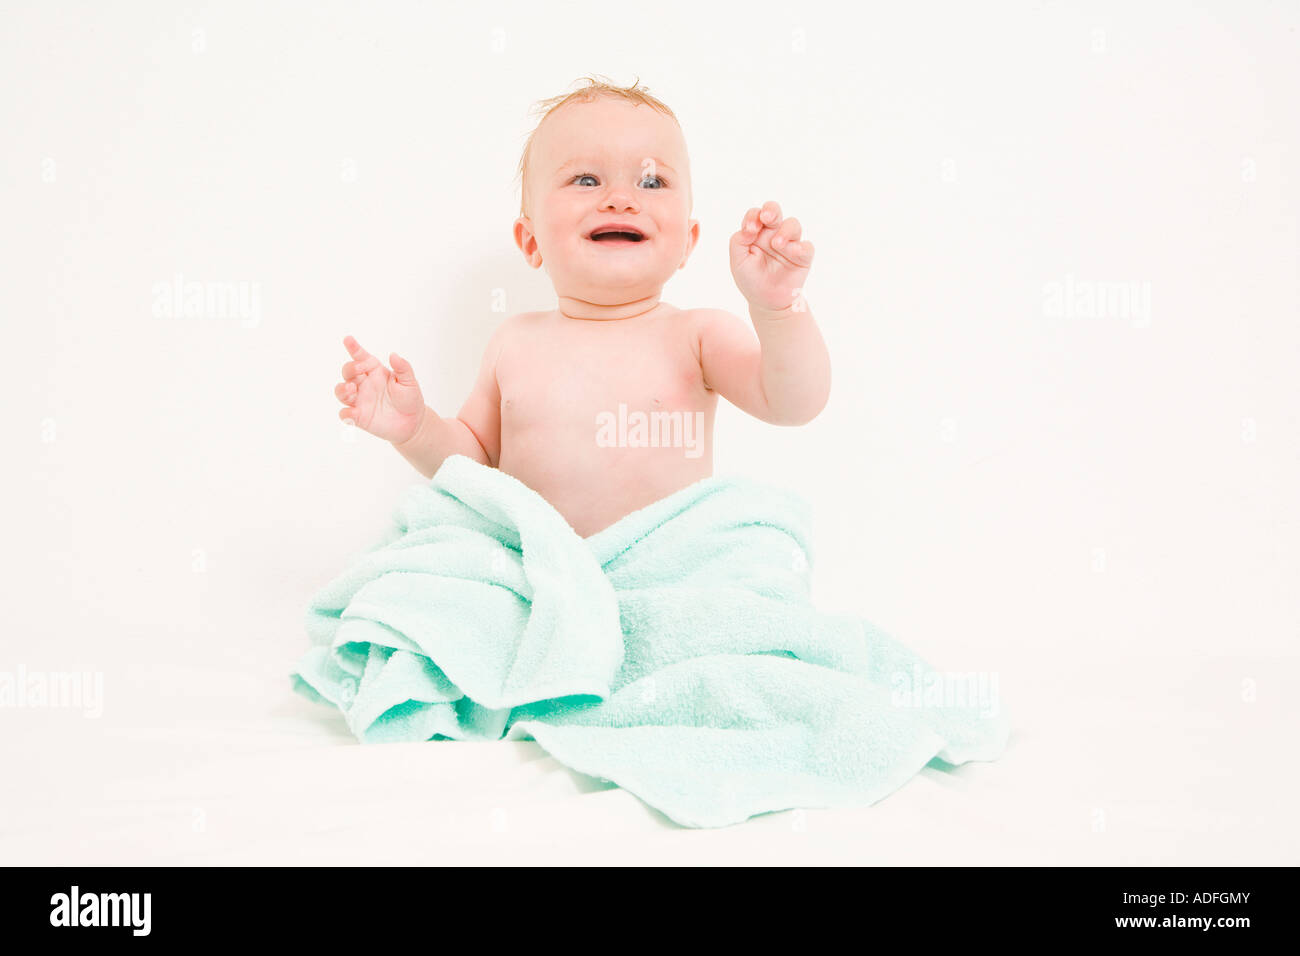 Baby-Sitter mit blauen Handtuch auf weißem Hintergrund Stockfoto